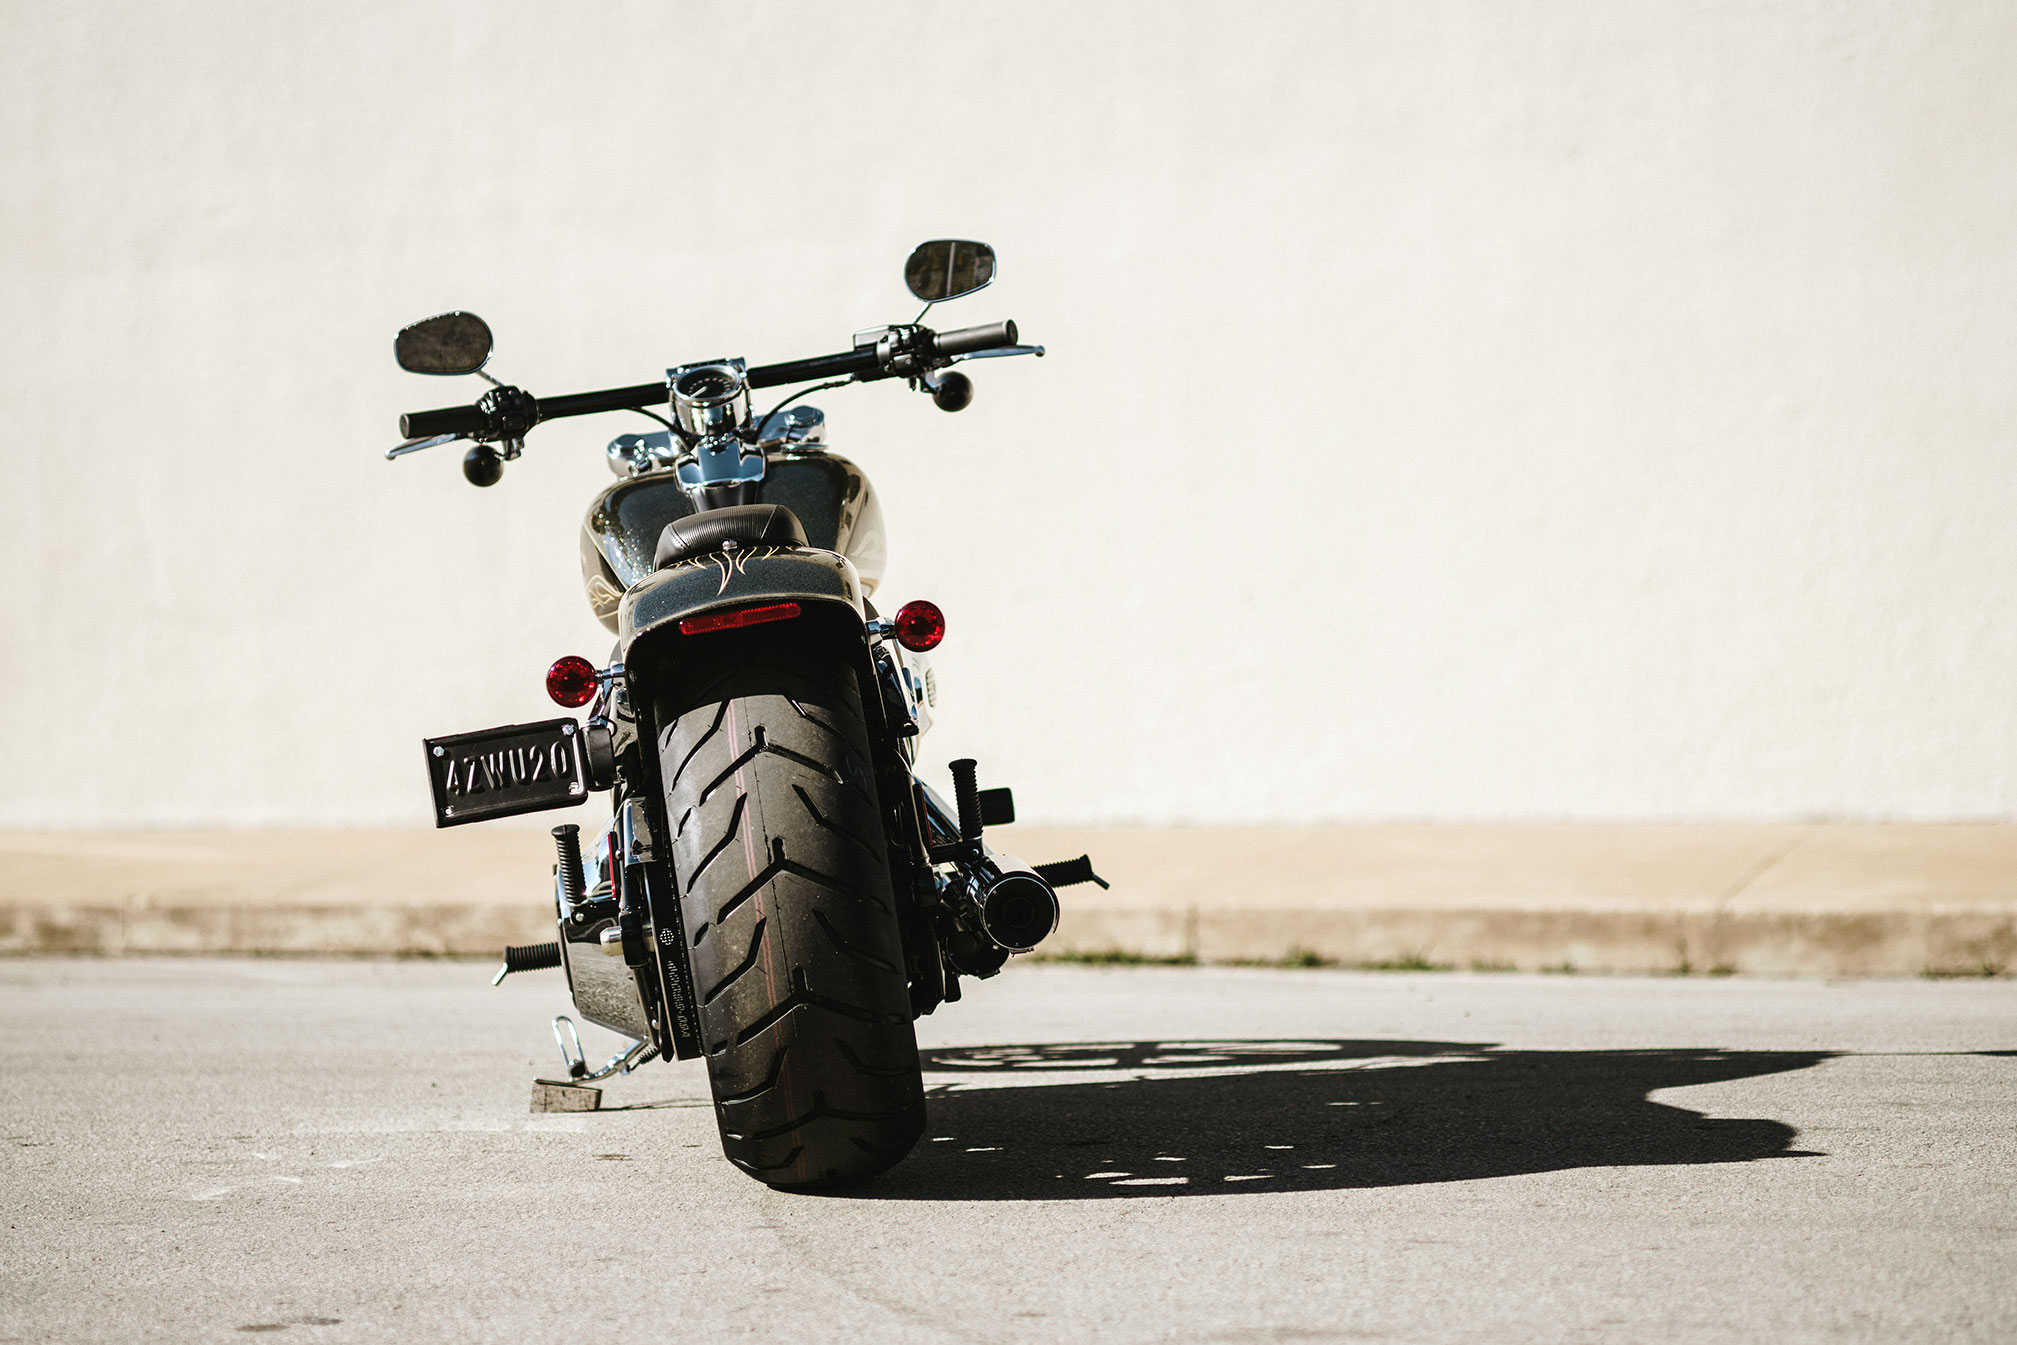 Meilleurs fonds d'écran Évasion Harley Davidson pour l'écran du téléphone